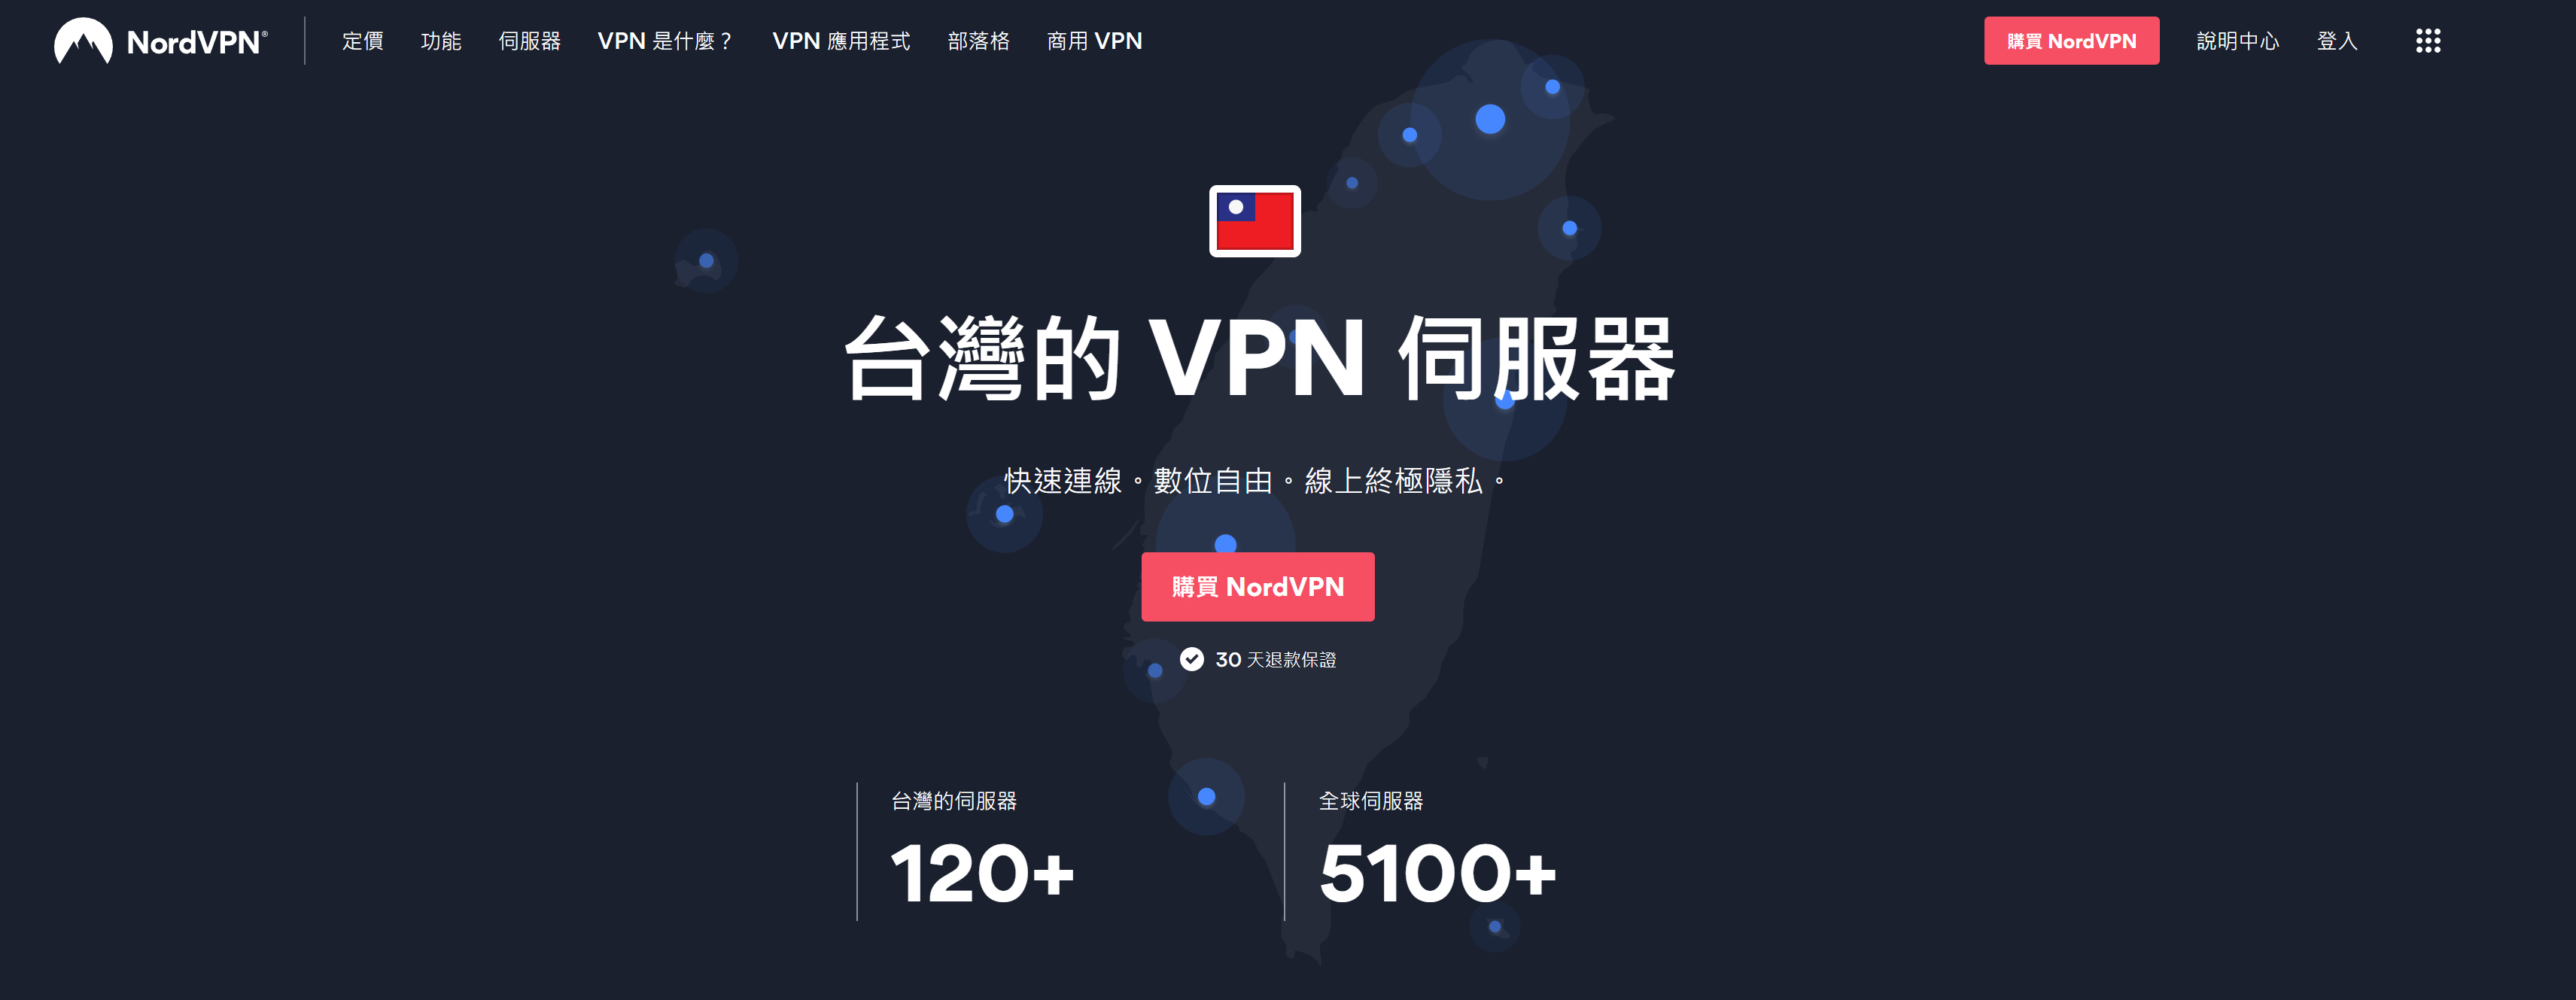 選擇適合自己的 VPN 類型：免費 VPN vs 付費 VPN。 - 免費 vpn, VPN 服務, VPN原理, VPN比較, VPN付費比較, 免費 VPN vs 付費 VPN, VPN選擇 - 敗家達人推薦